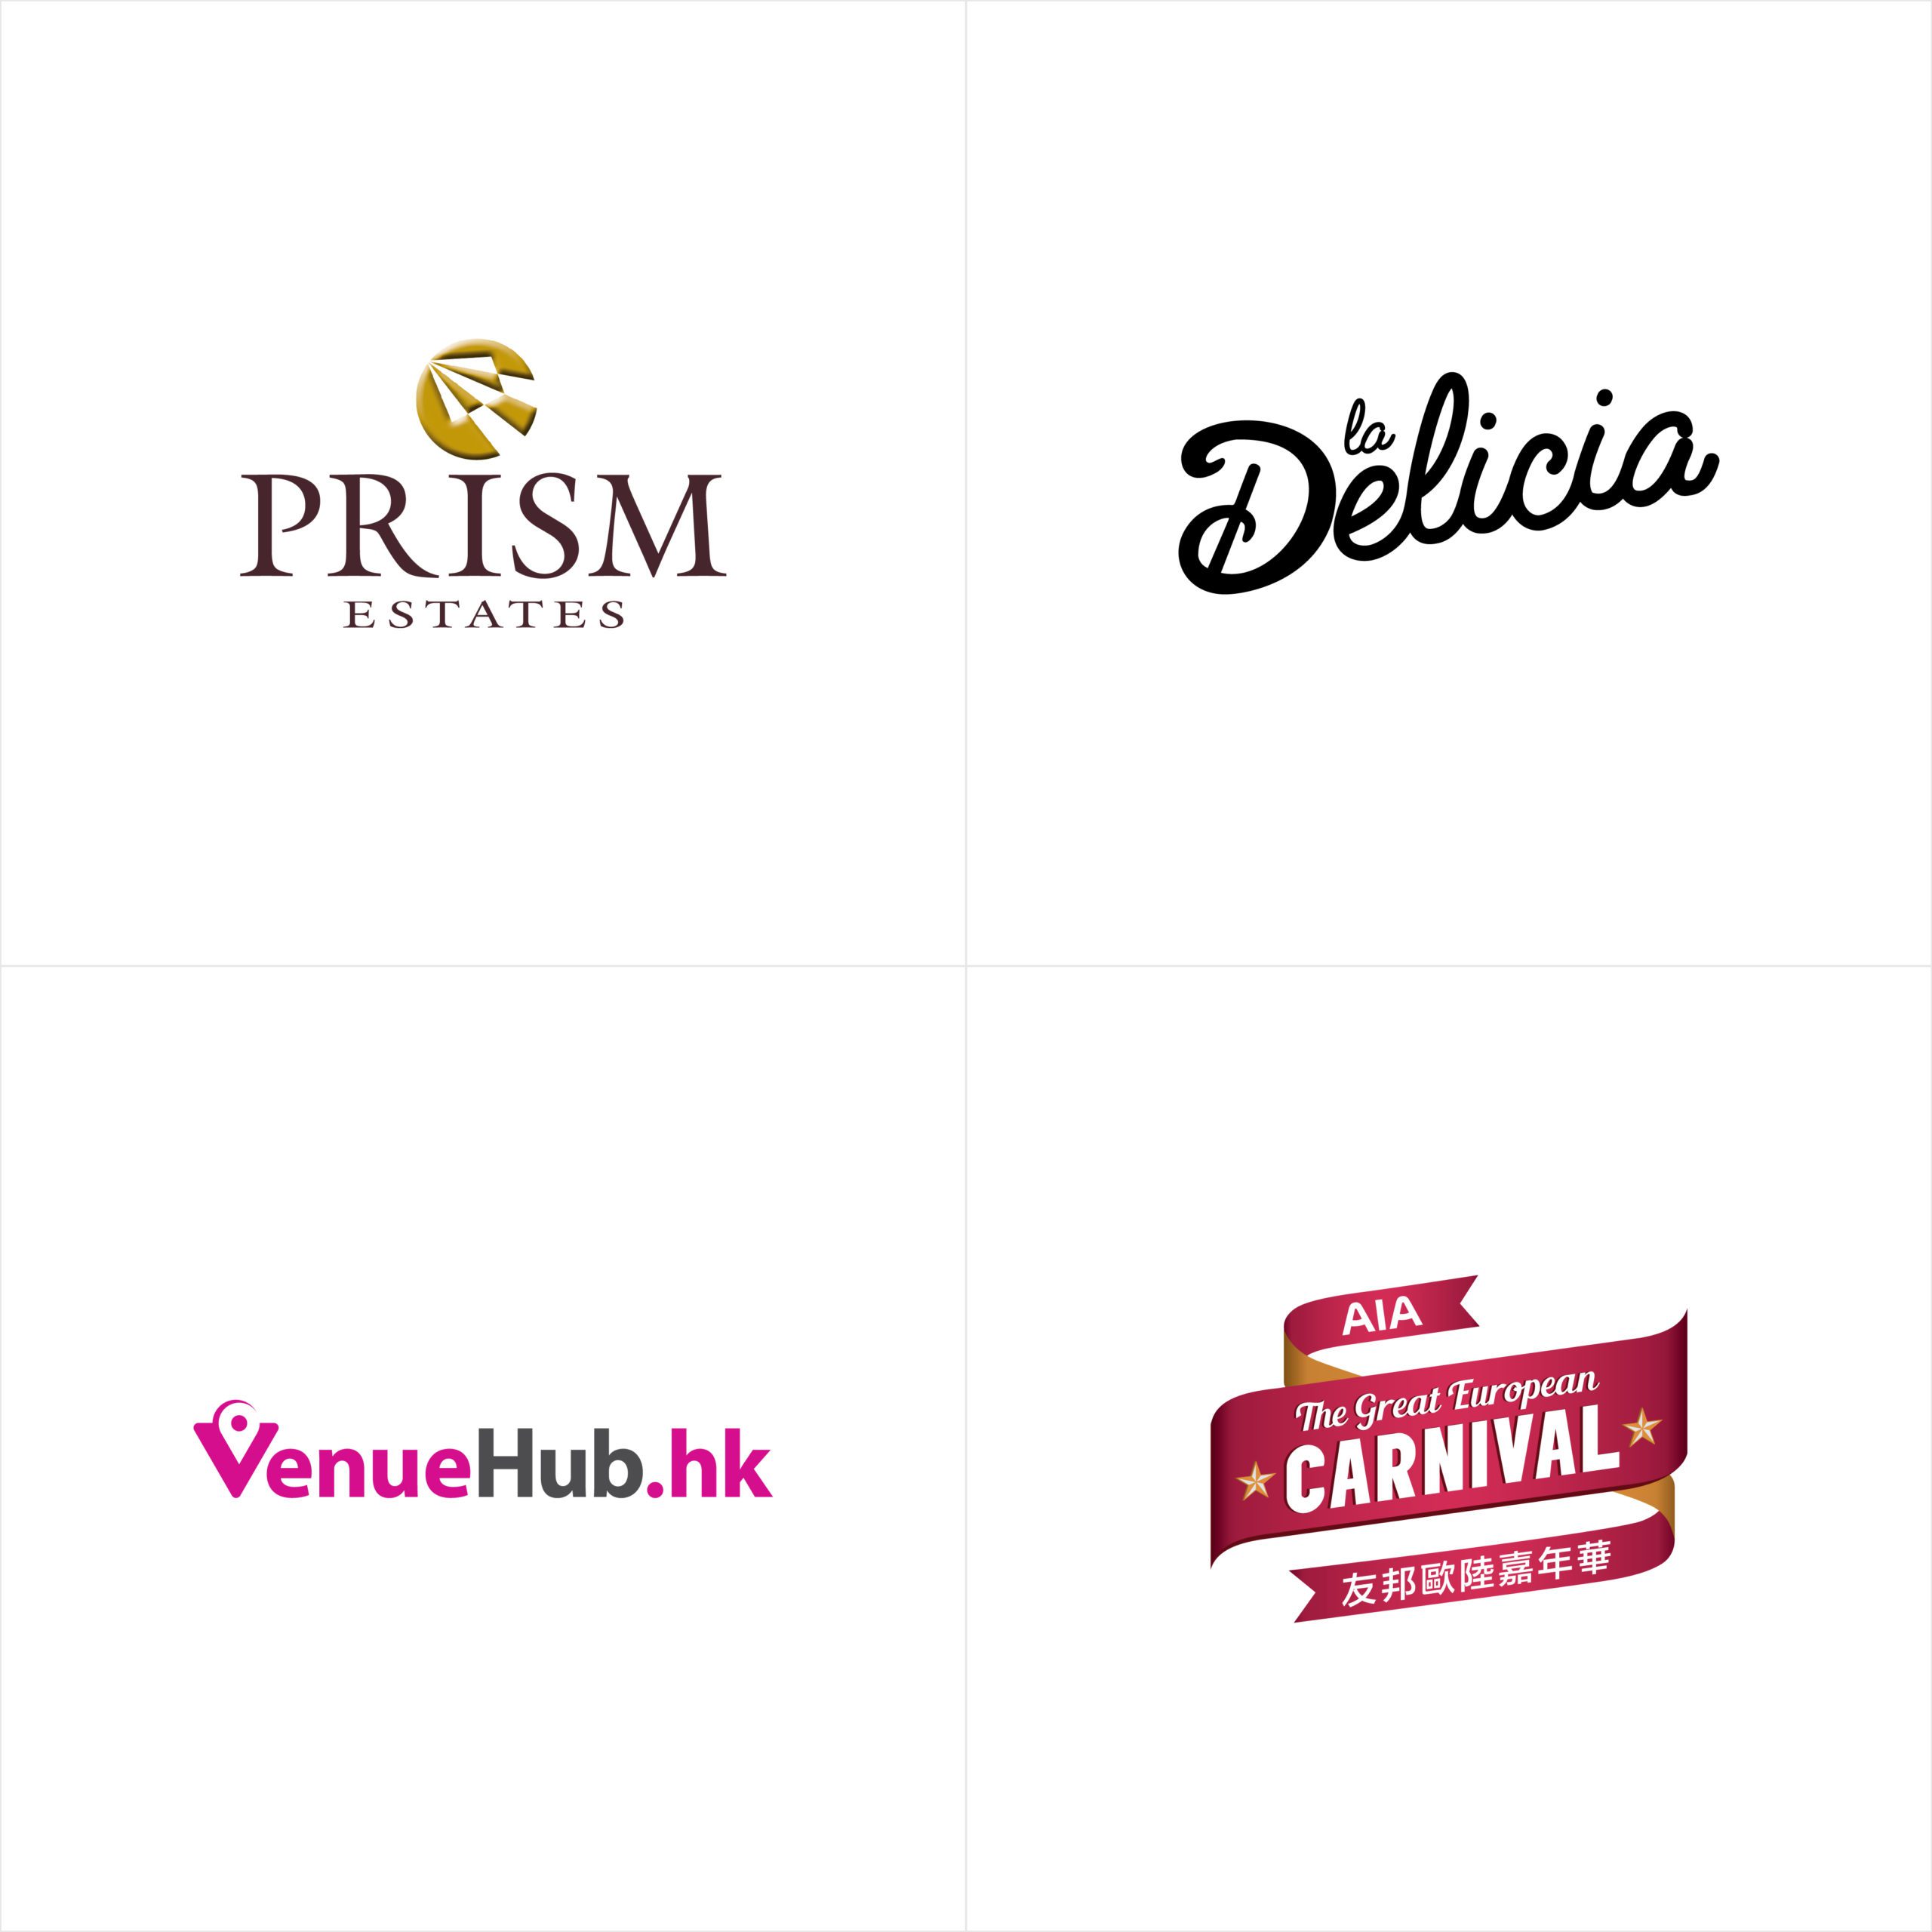 Prism La Delicia VenueHub.hk AIA logo